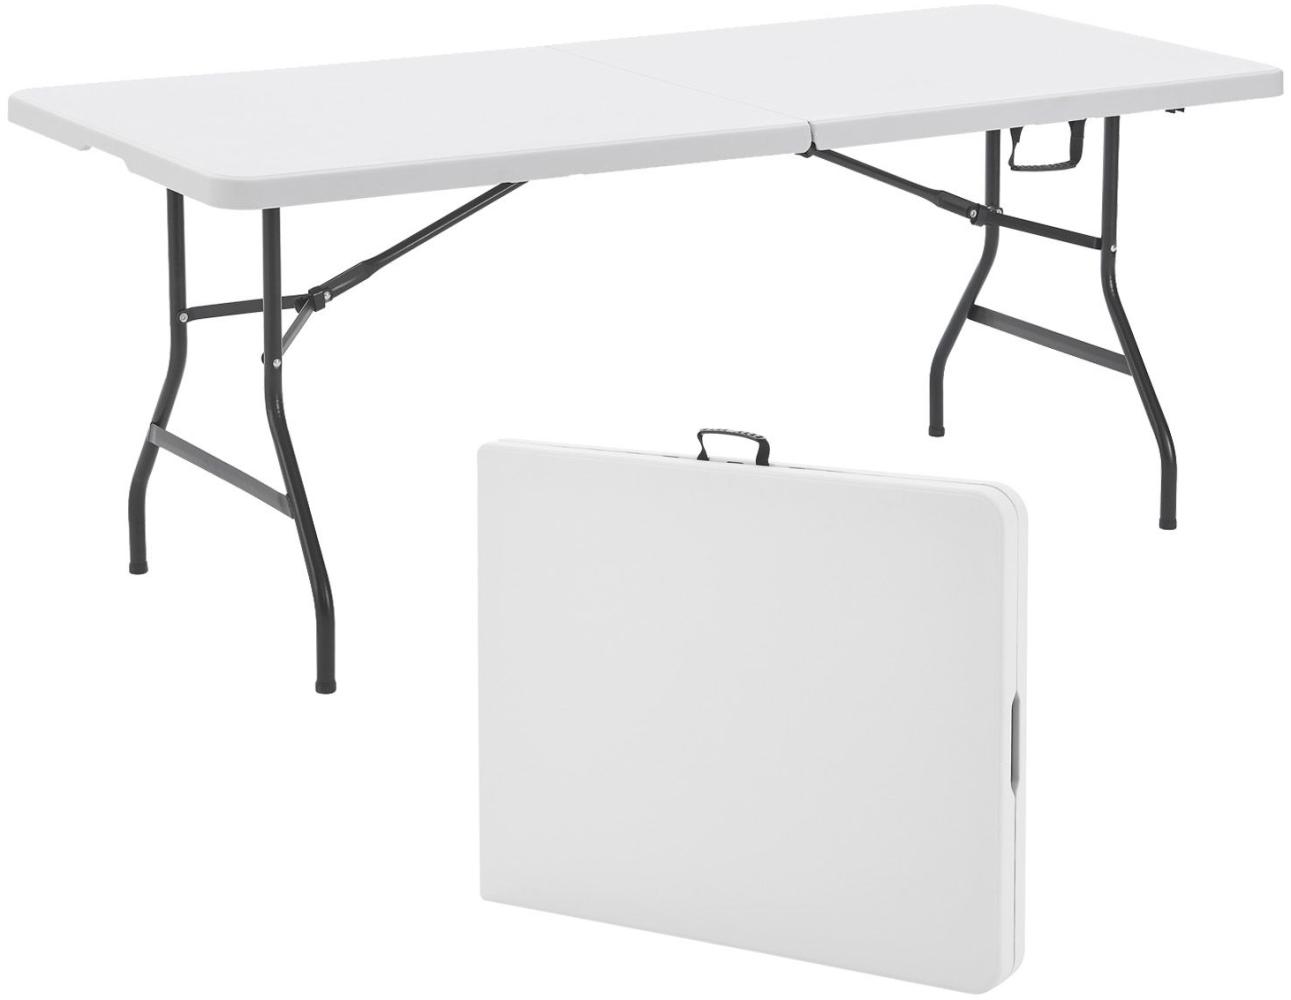 Juskys Klapptisch Buffettisch XL klappbar - groß, bis 80 kg belastbar - Kunststoff Tisch - Camping, Garten & Party - Campingtisch Gartentisch Weiß Bild 1